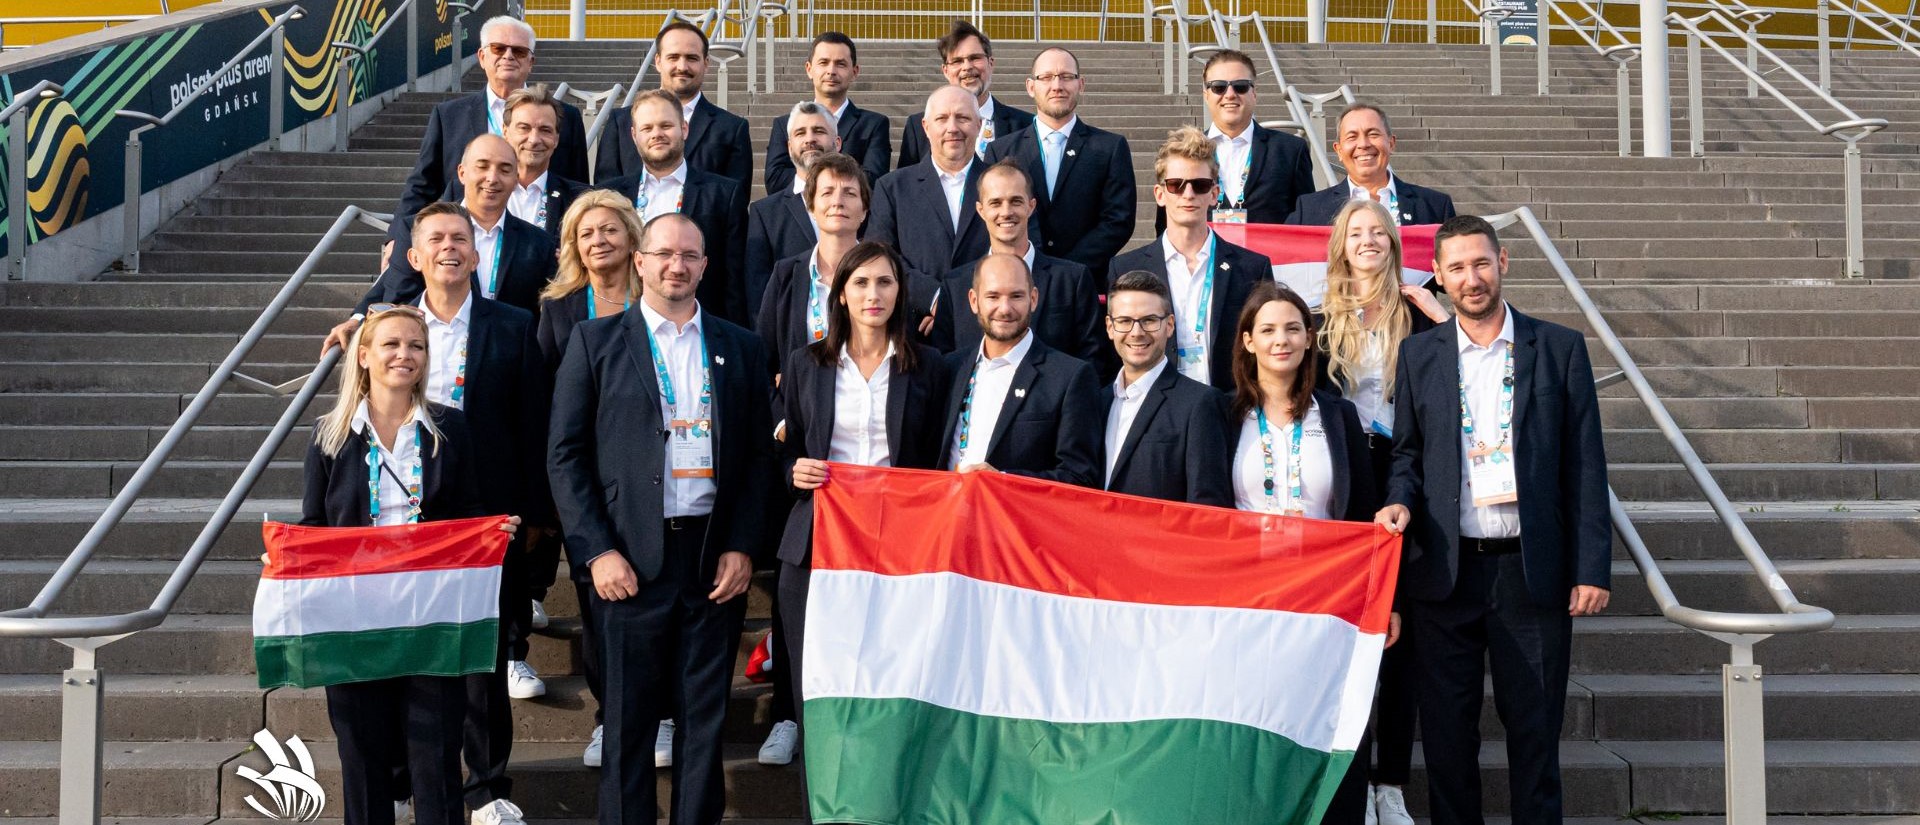 Hatalmas magyar siker a Szakmák Európa-bajnokságán